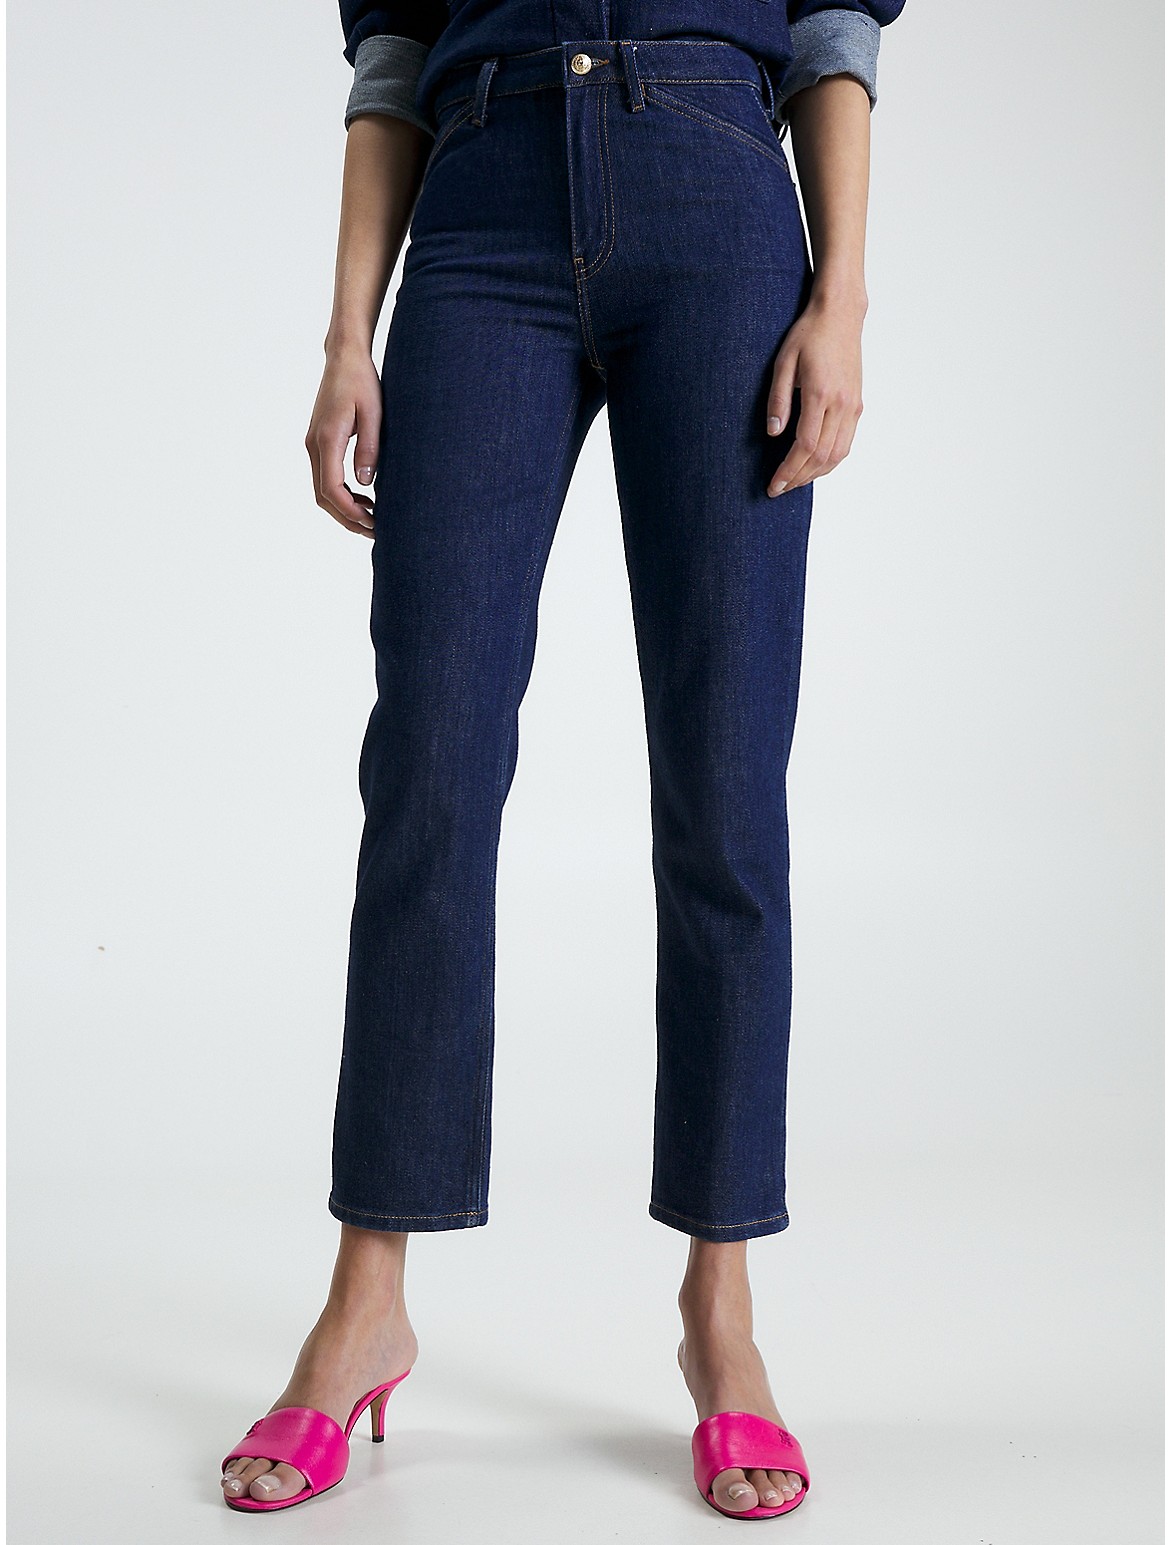 Tommy Hilfiger Women's High-Waist Straight Fit Jean - Blue - 29W x 32L